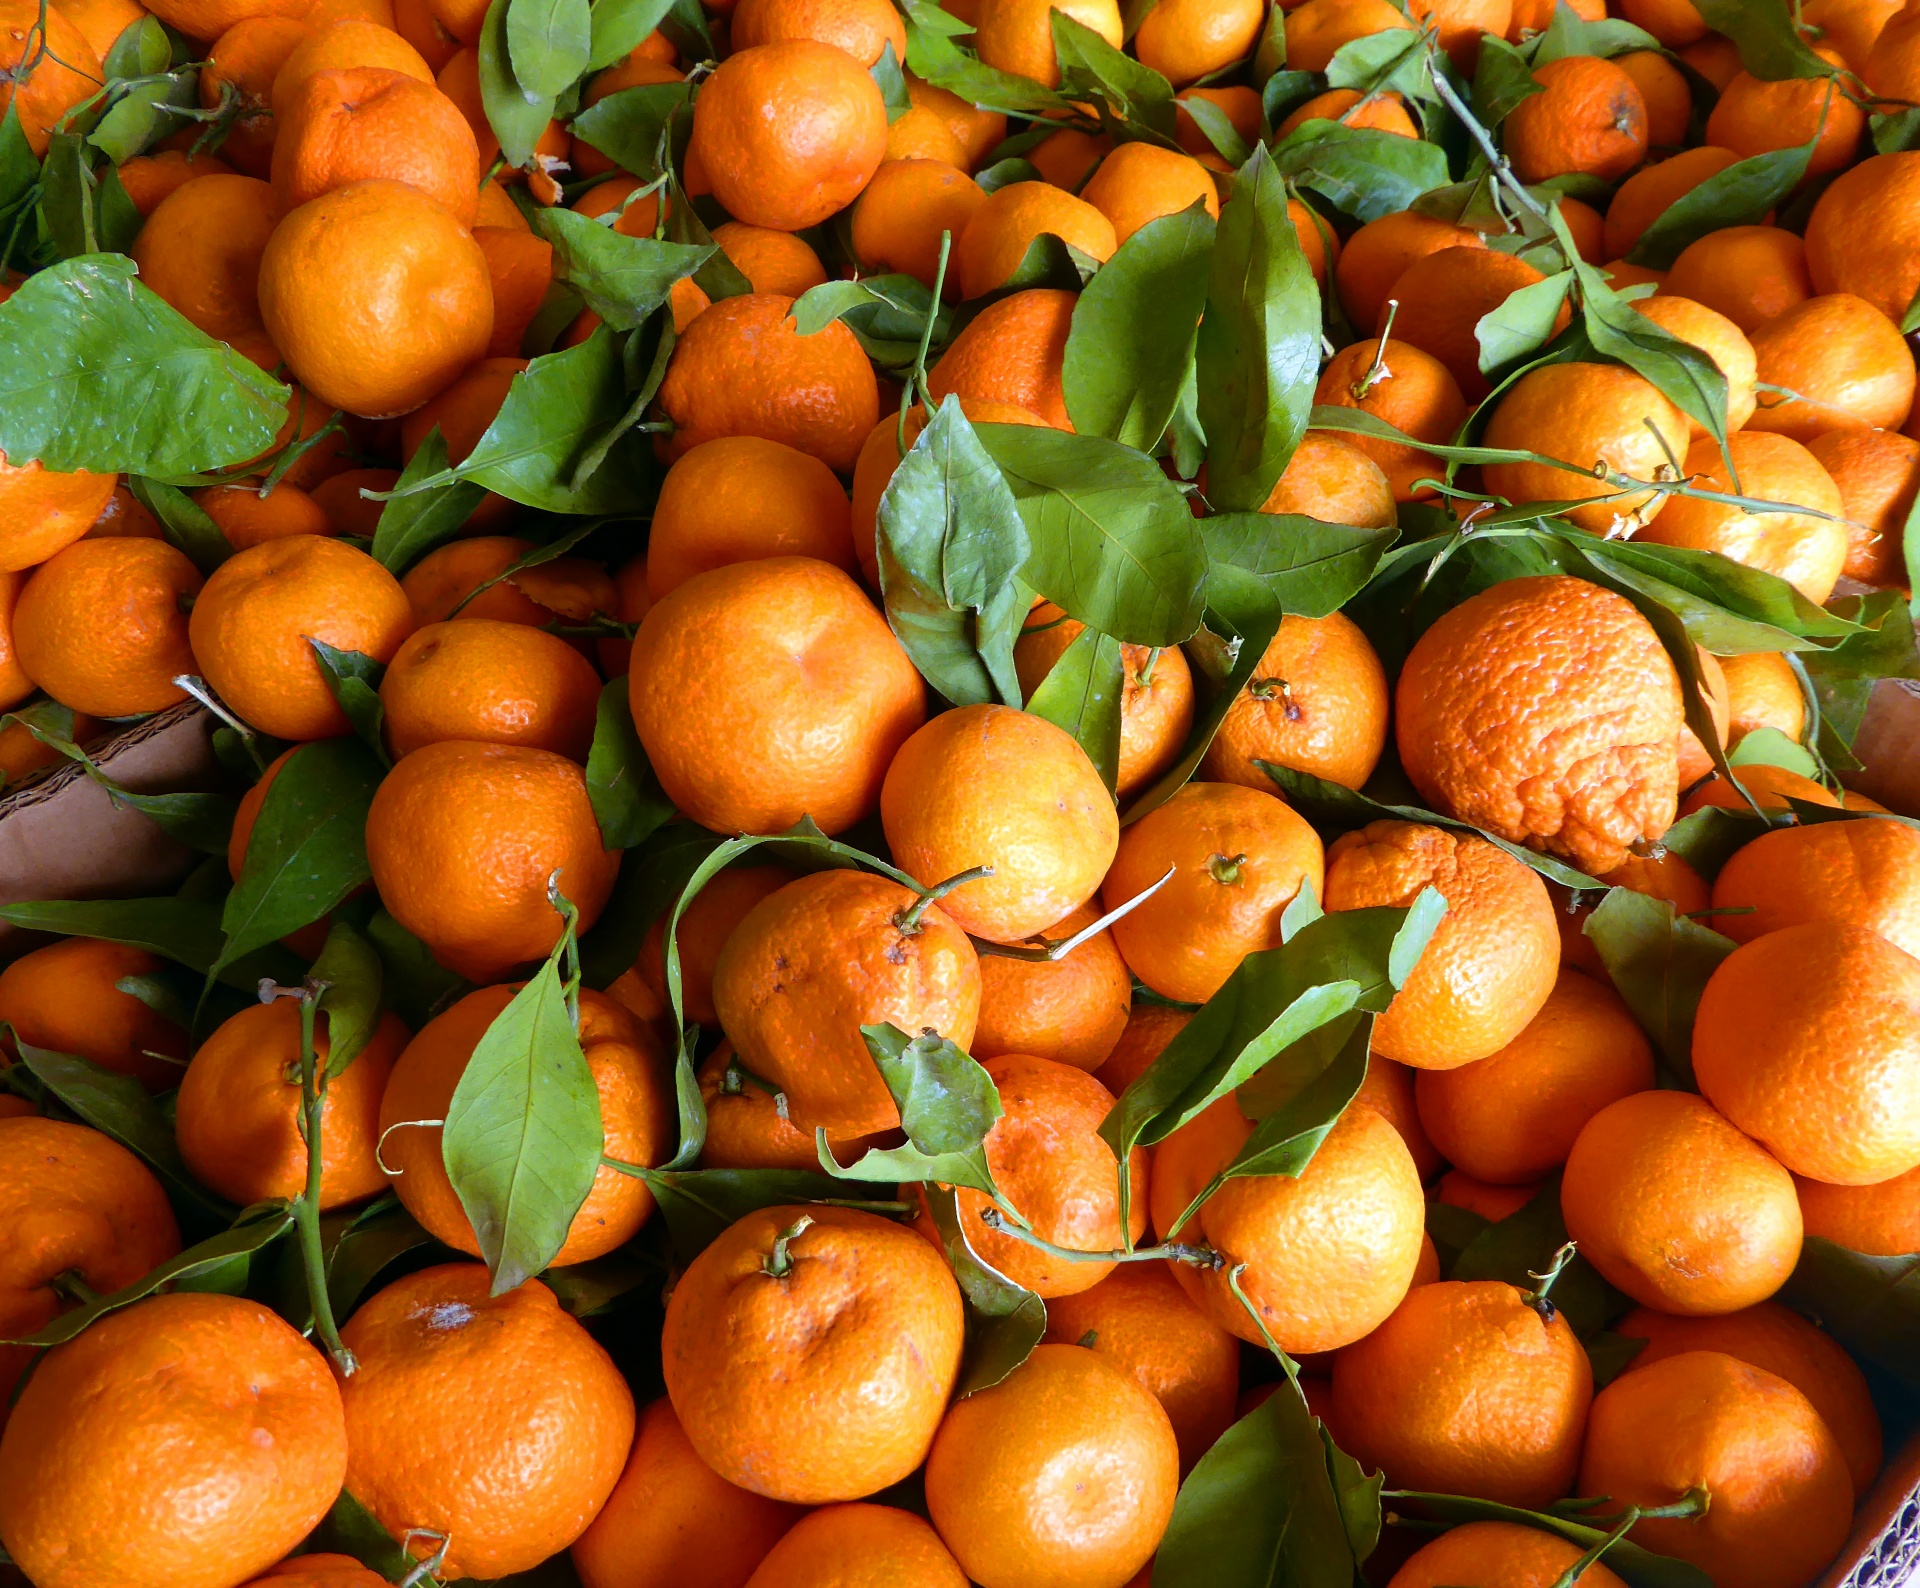 Cajas de mandarinas